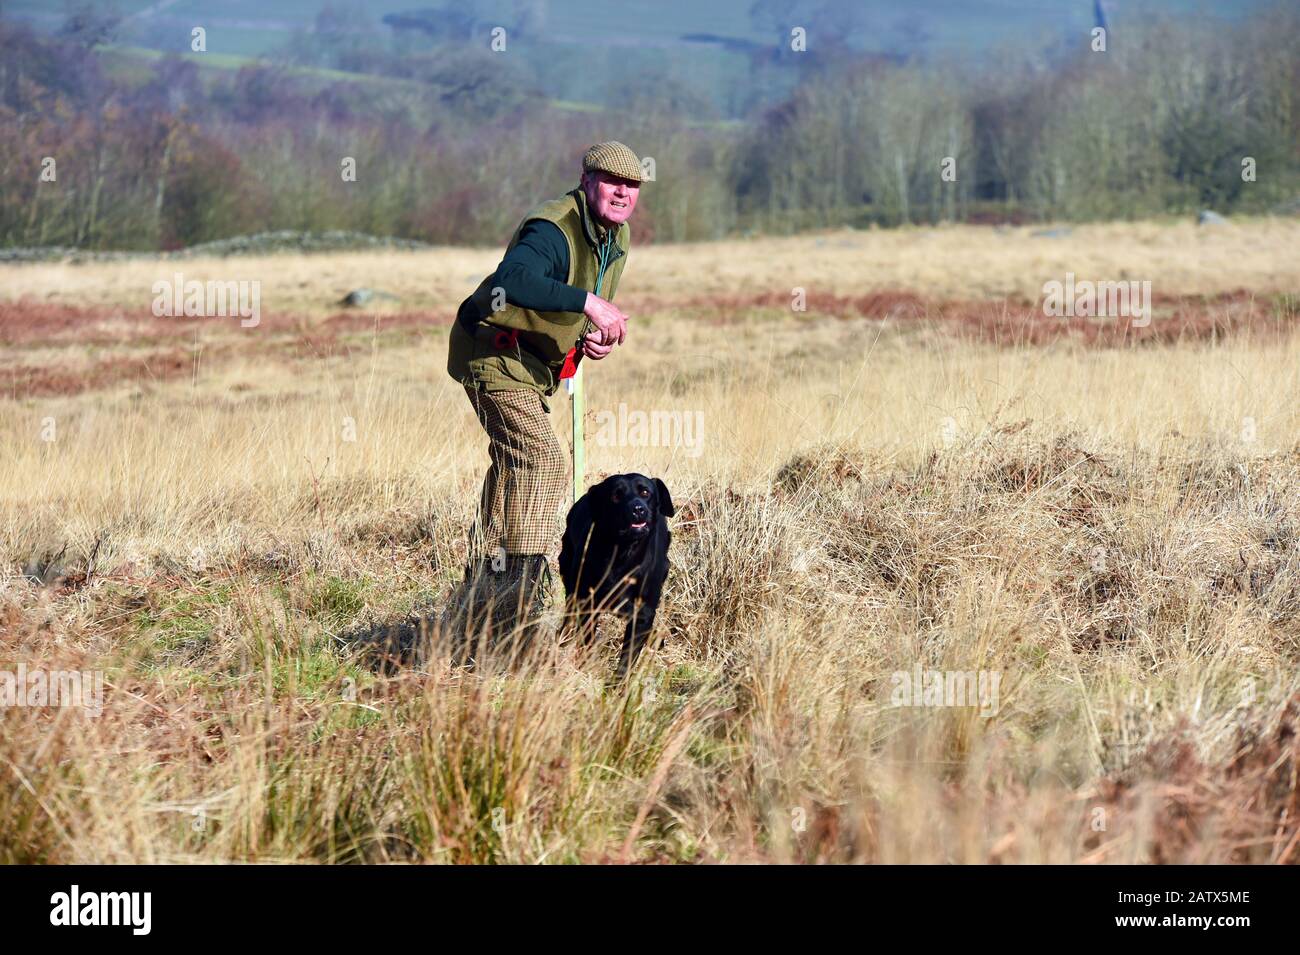 Waffenhunde Trainingseinheit Barden moor Yorkshire Dales UK ein Wildhüter trainiert seinen Hund, um einen Dummy-Vogel zu holen. Stockfoto